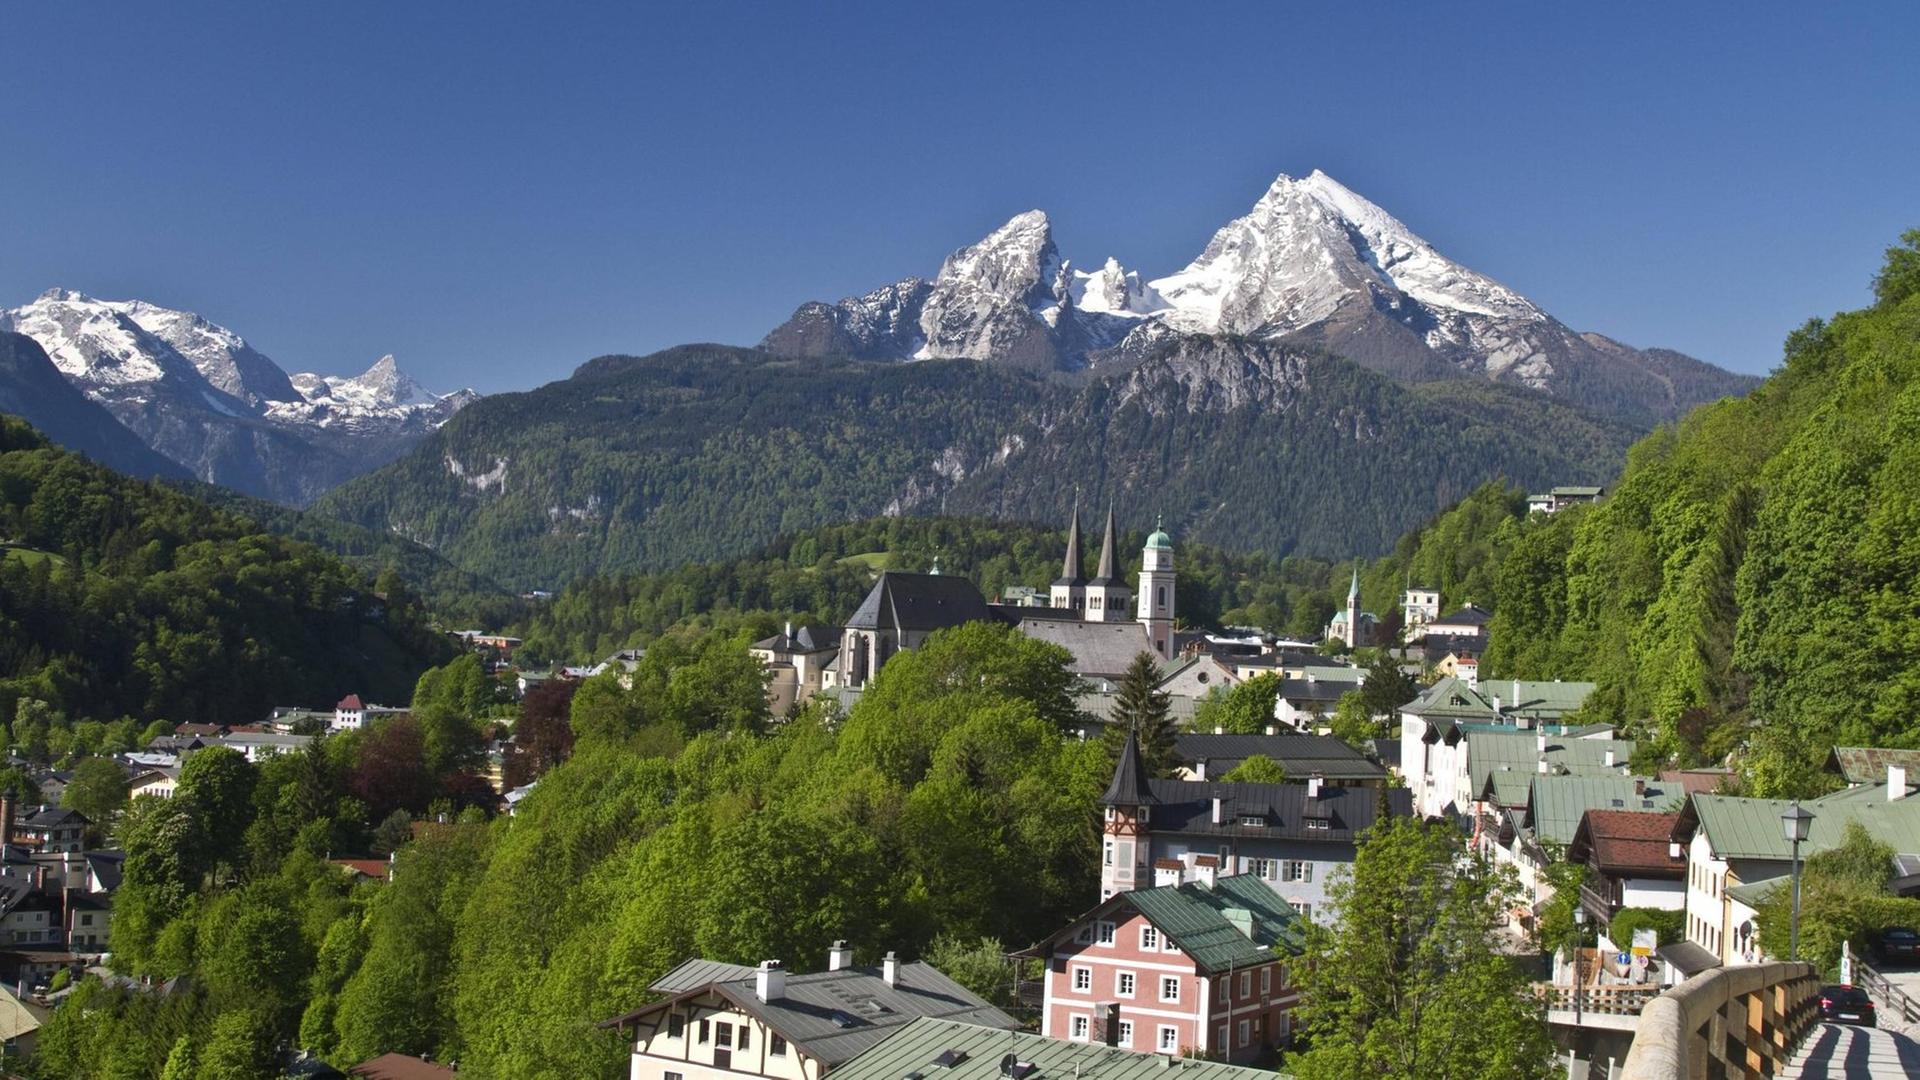 Panoramablick auf die Stadt Berchtesgaden in Bayern und die dahinterliegenden Berge.